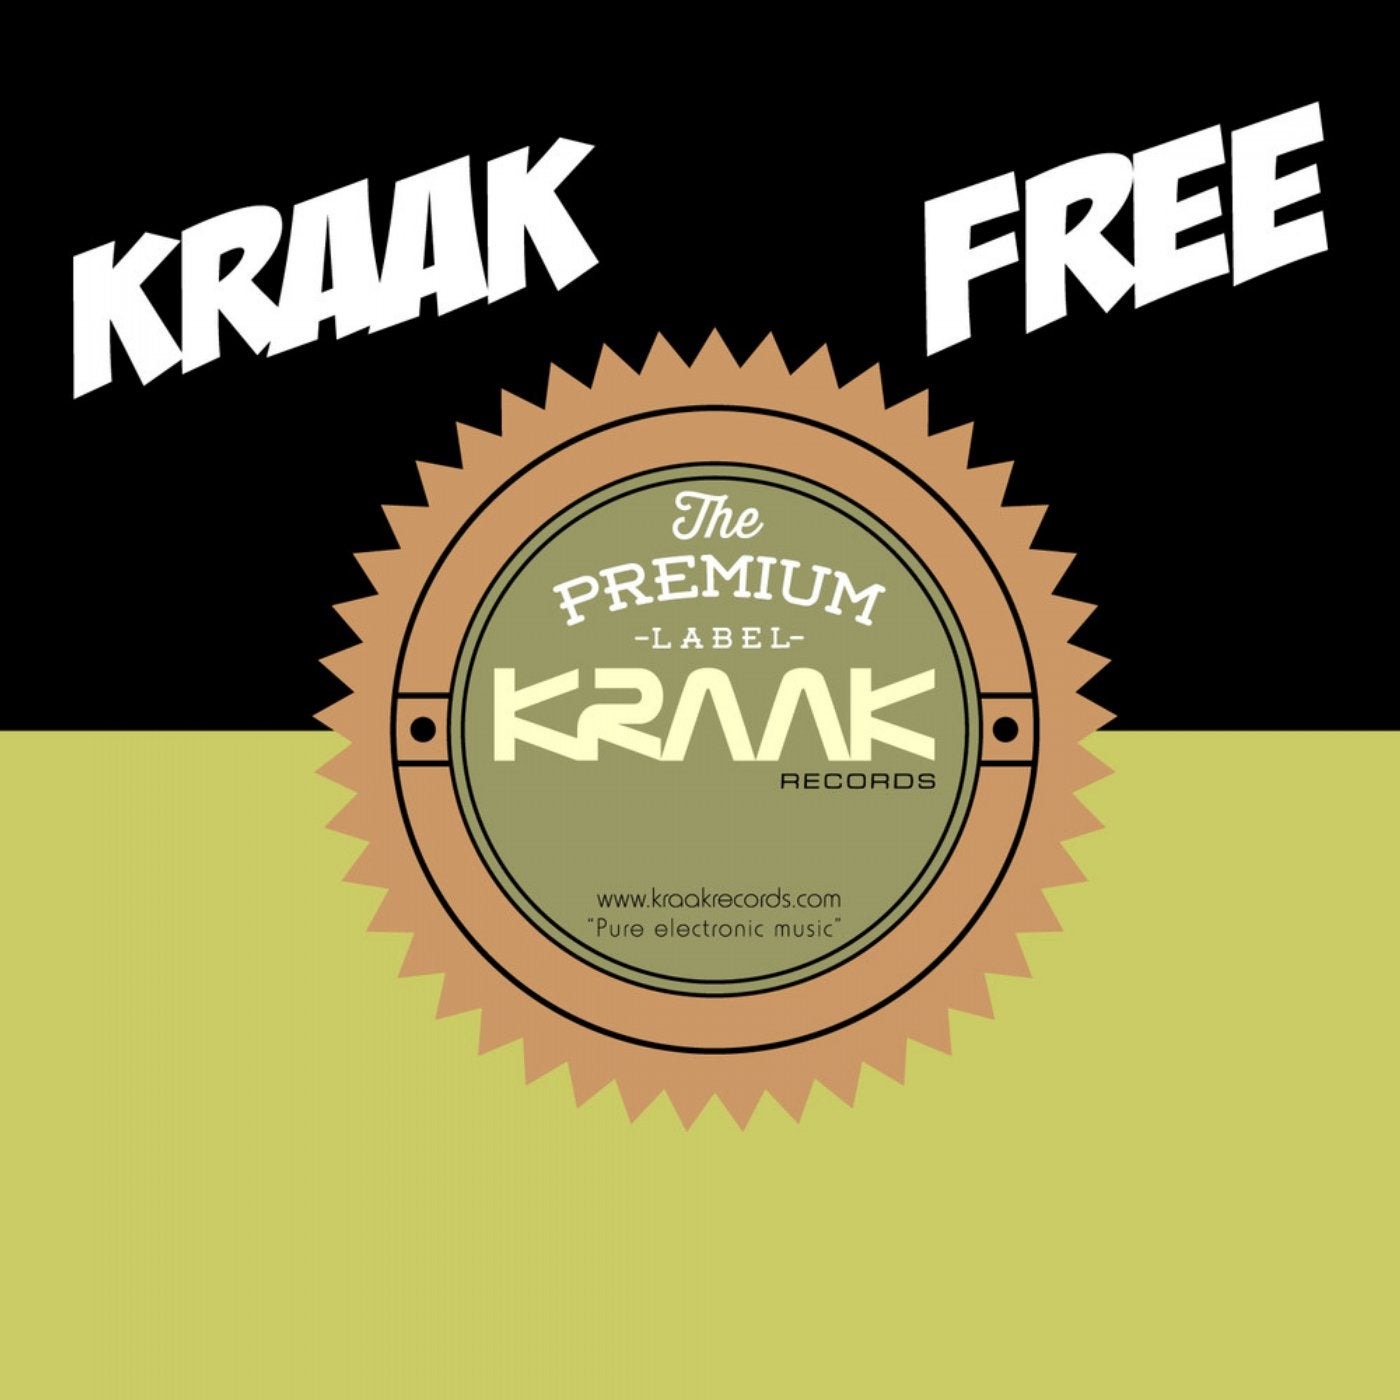 Kraak Free